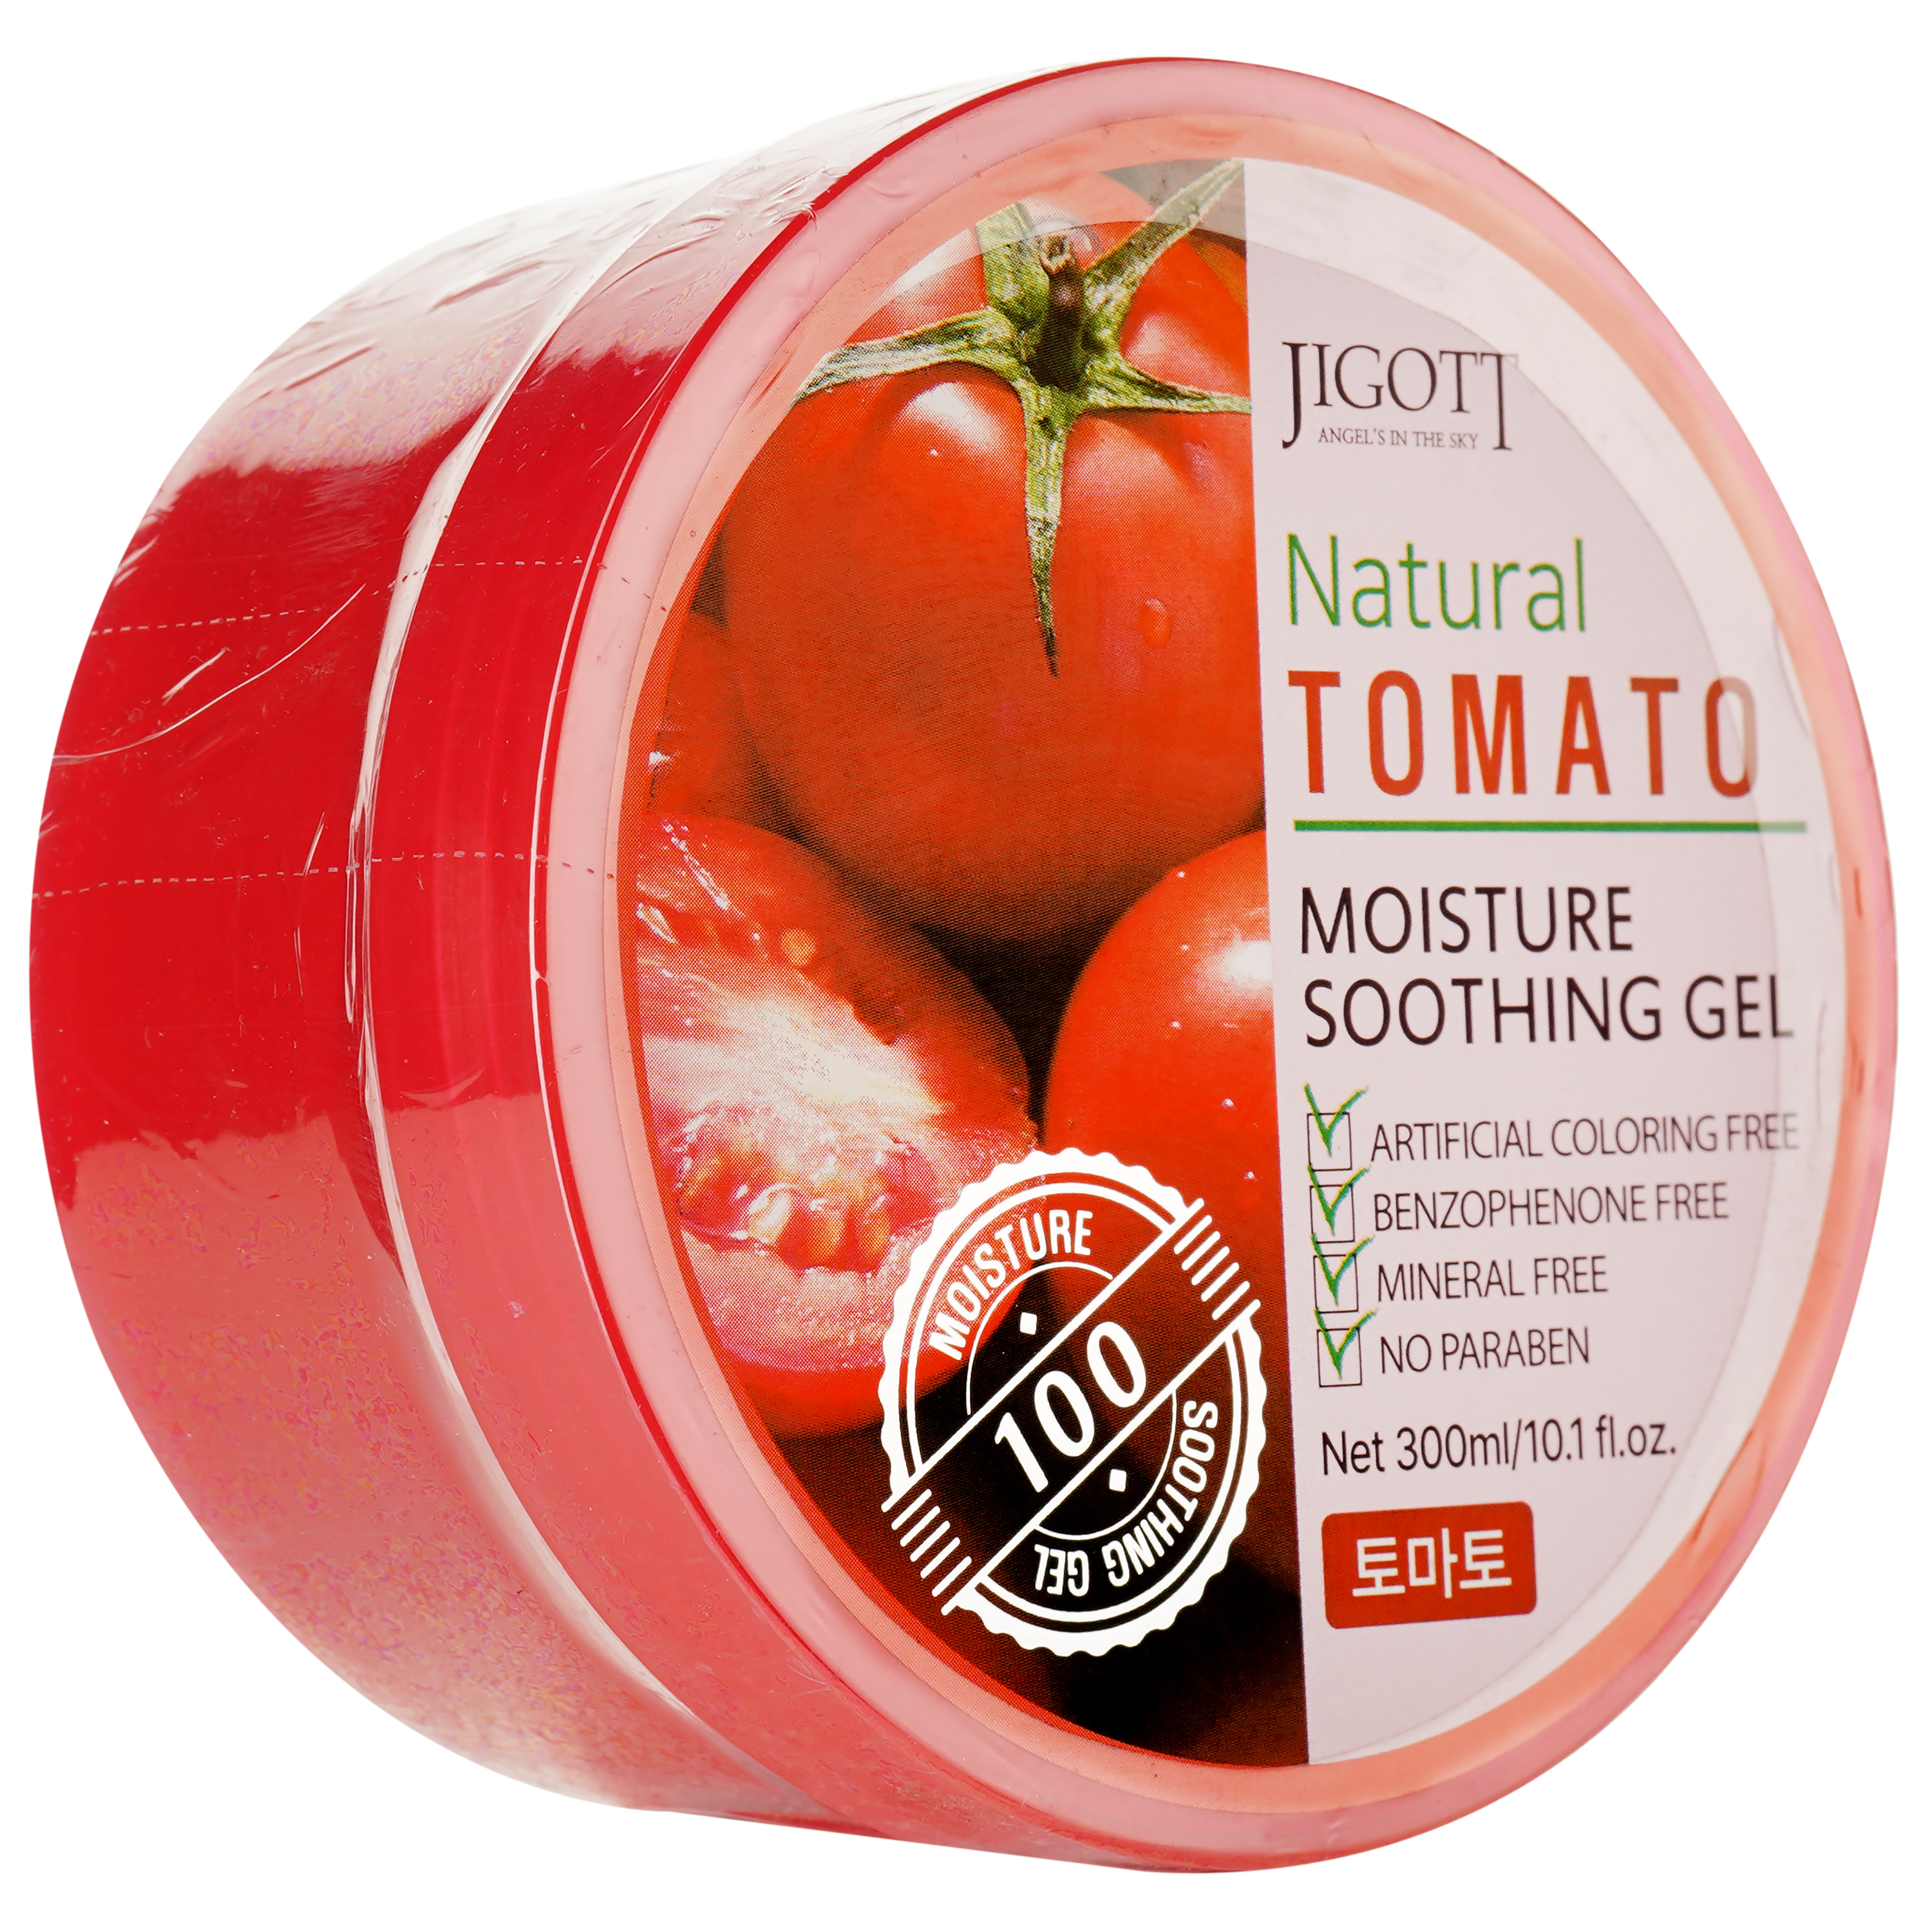 Зволожуючий гель для обличчя Jigott Natural Tomato Moisture Soothing Gel з екстрактом томату, 300 мл - фото 2